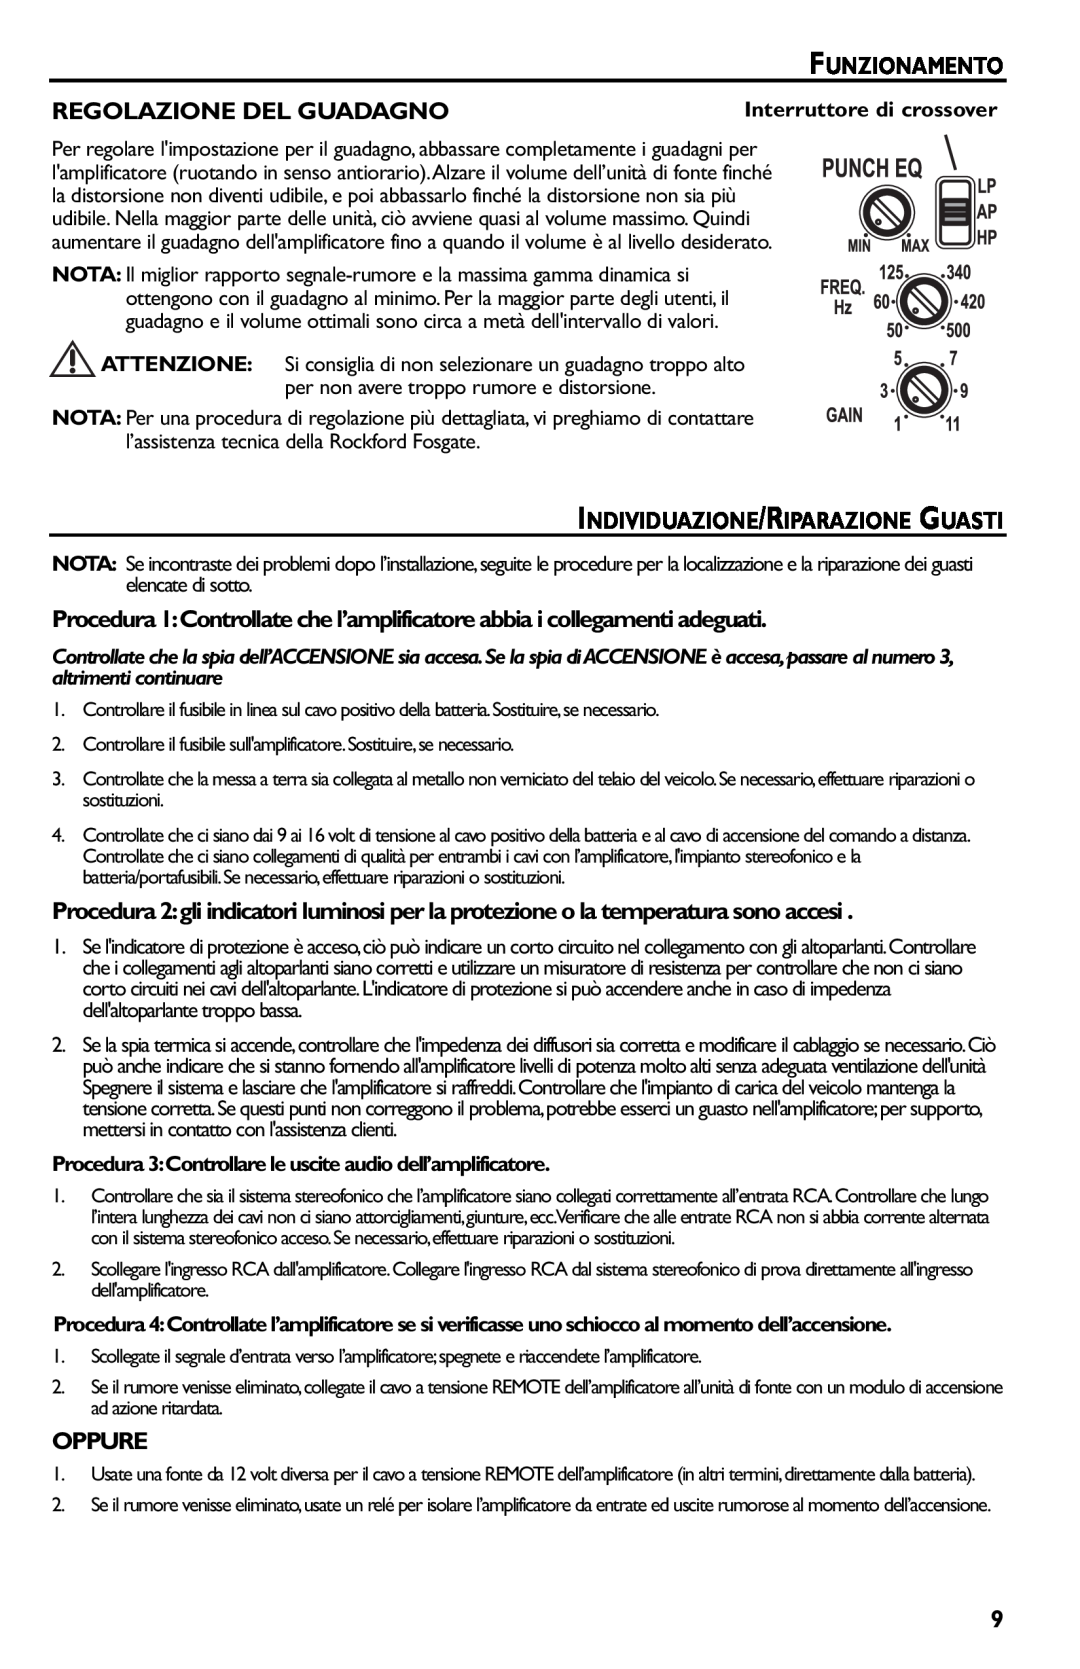 Rockford Fosgate p3002 manual Funzionamento, Regolazione Del Guadagno, Individuazione/Riparazione Guasti, Oppure 